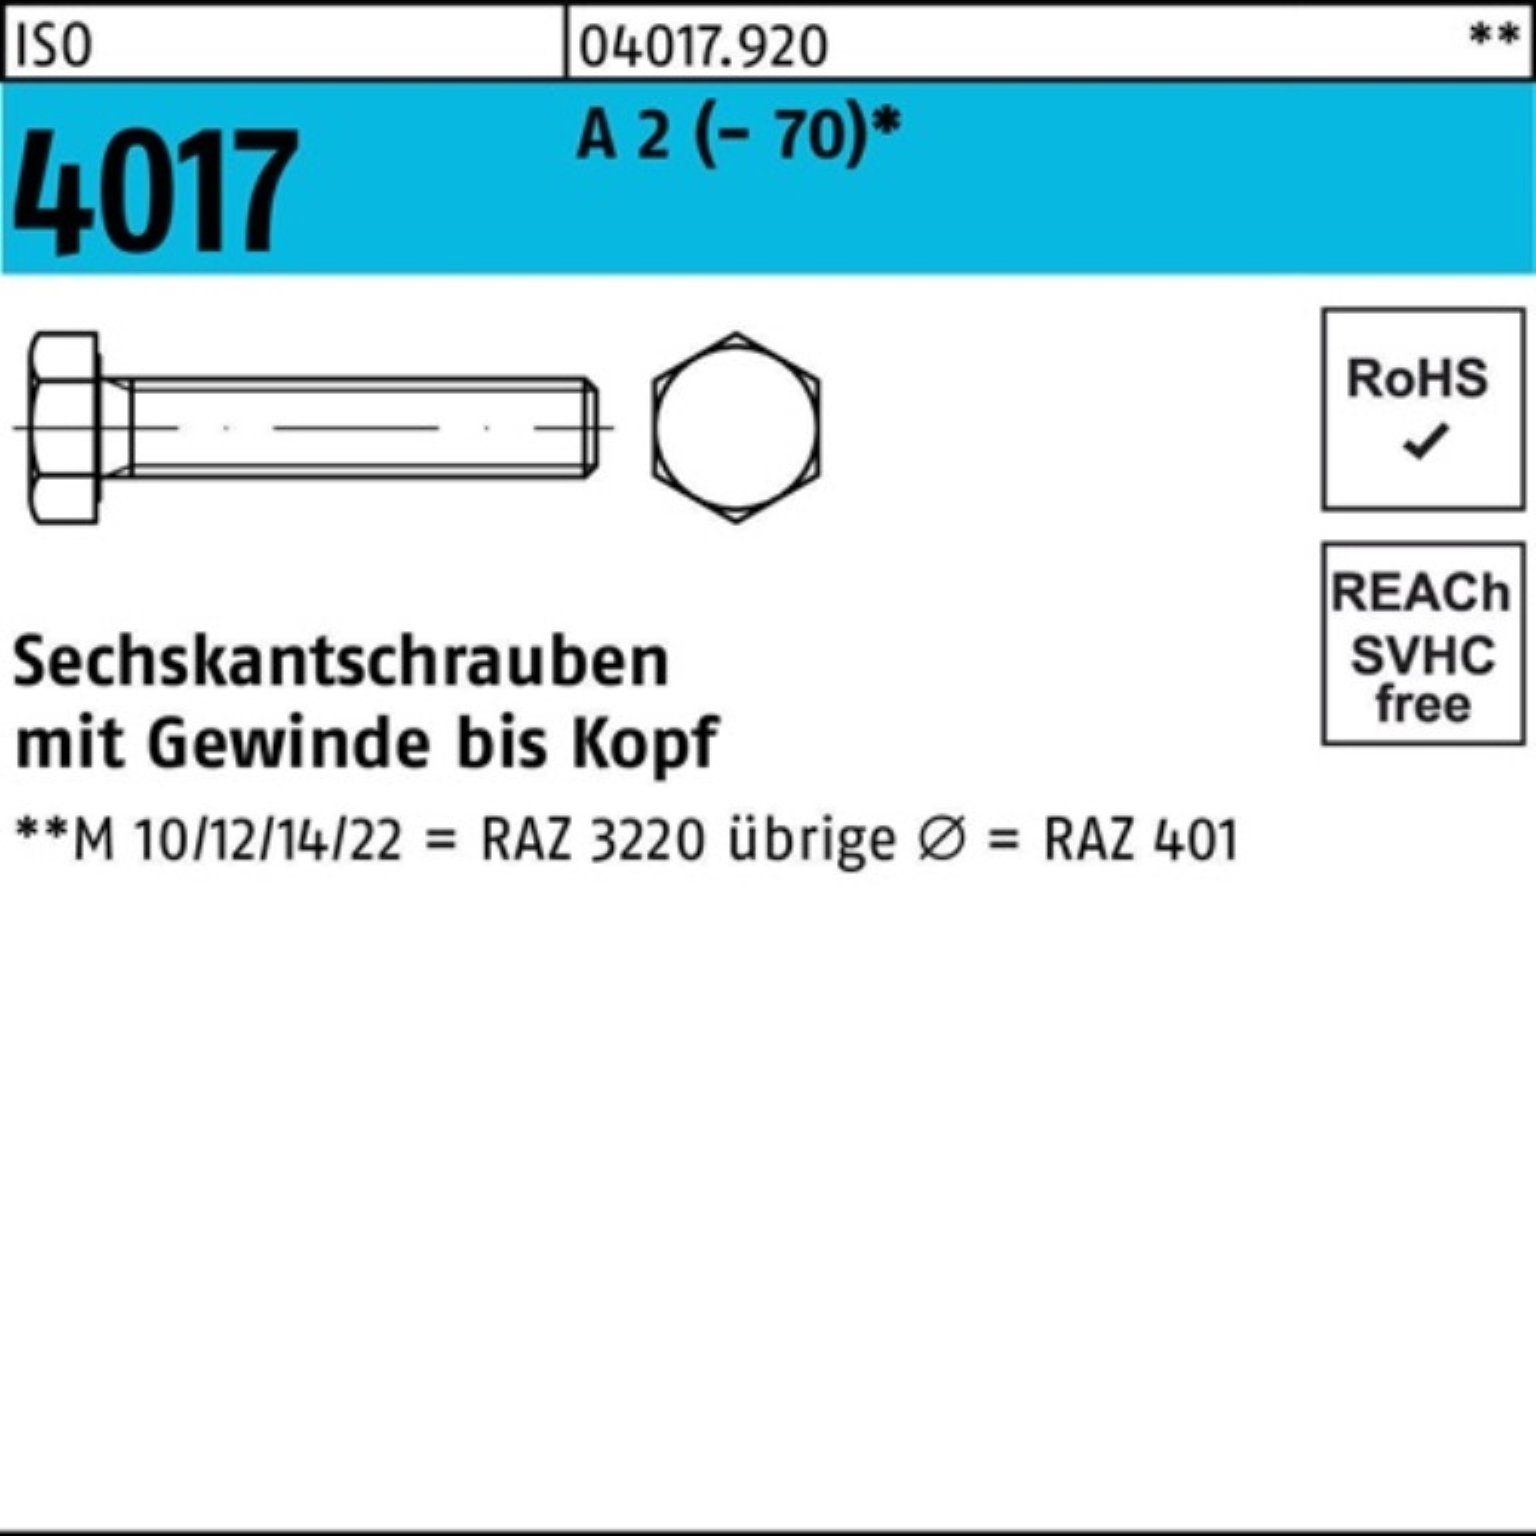 Bufab Sechskantschraube 100er Pack Sechskantschraube ISO 4017 VG M6x 40 A 2 (70) 100 Stück